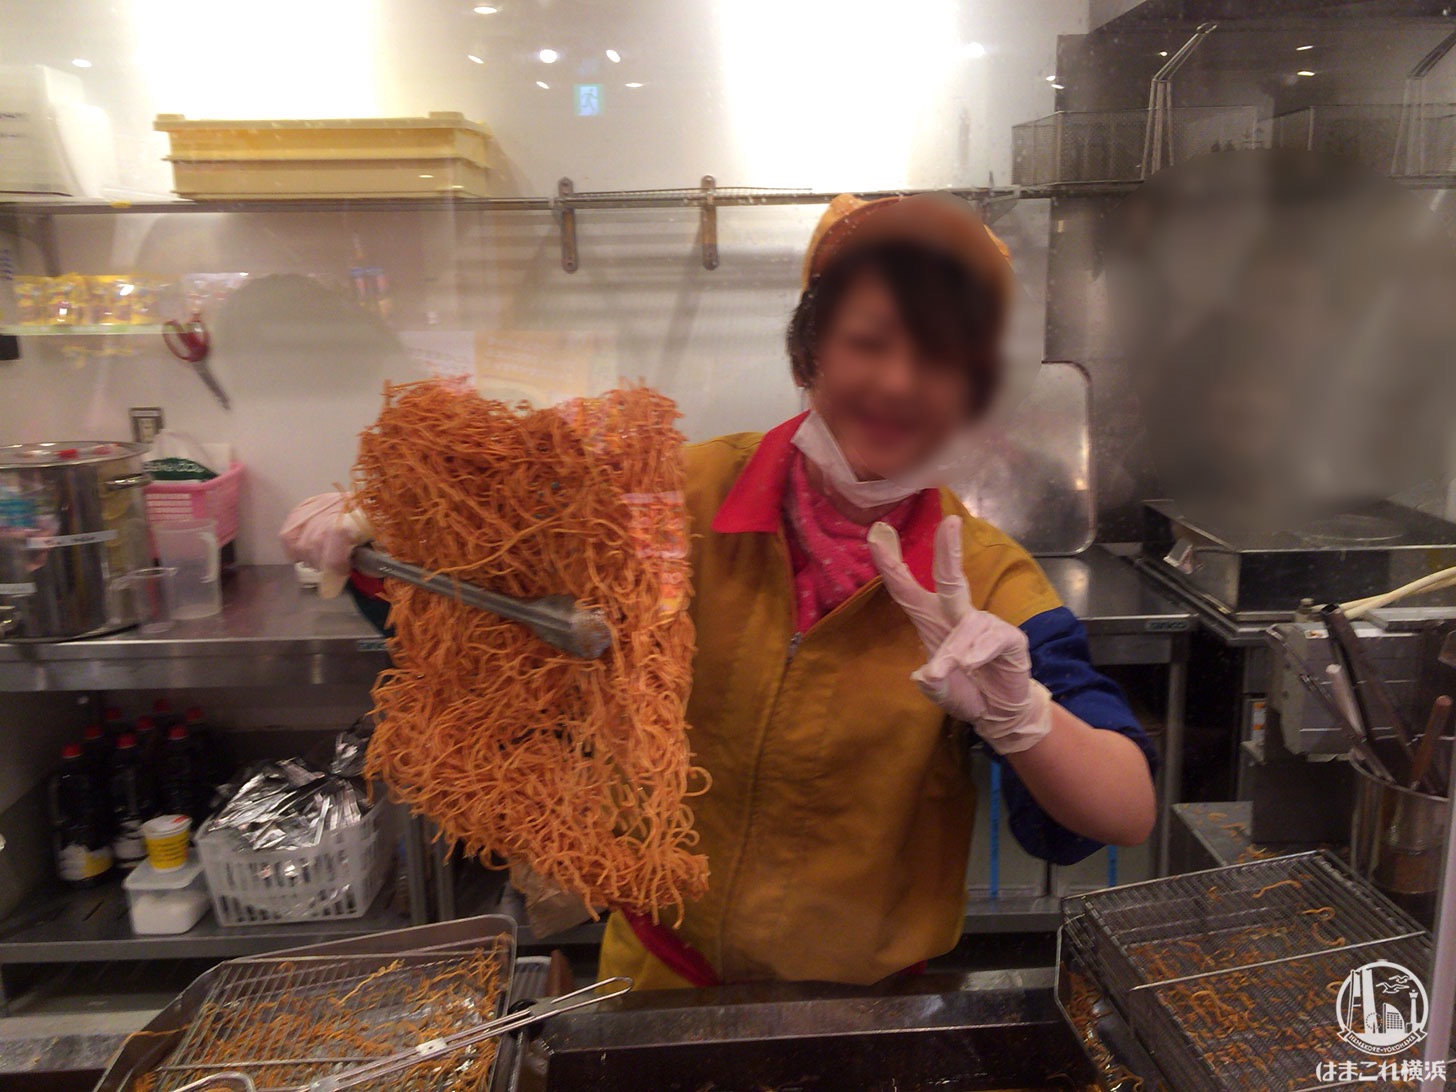 横浜中華街「ベビースターランド」は出来たてベビースターラーメンが食べられる人気スポット